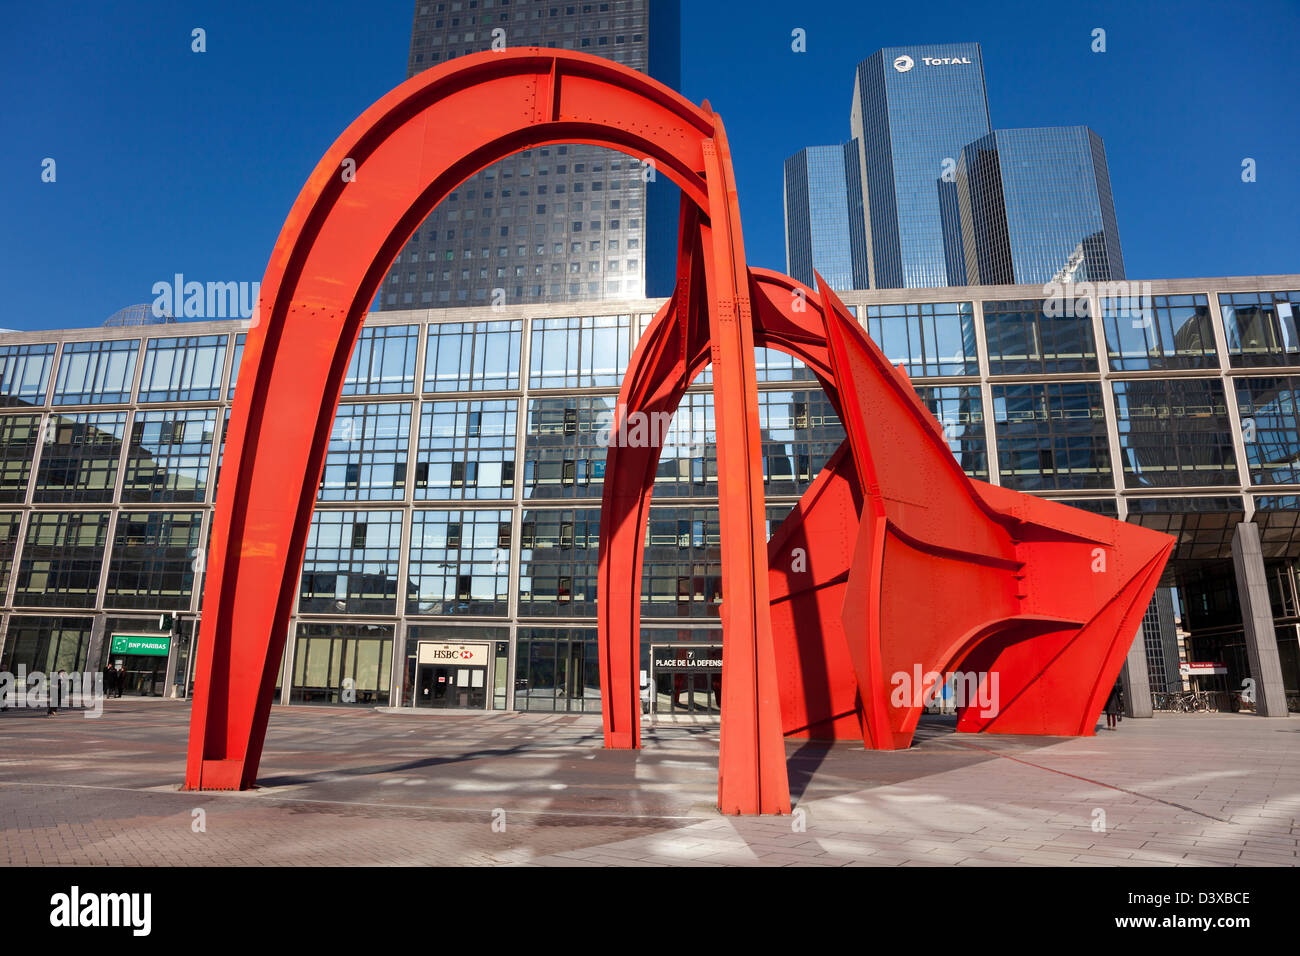 Calder structure, La Defense, Paris, Ile de France, France Stock Photo